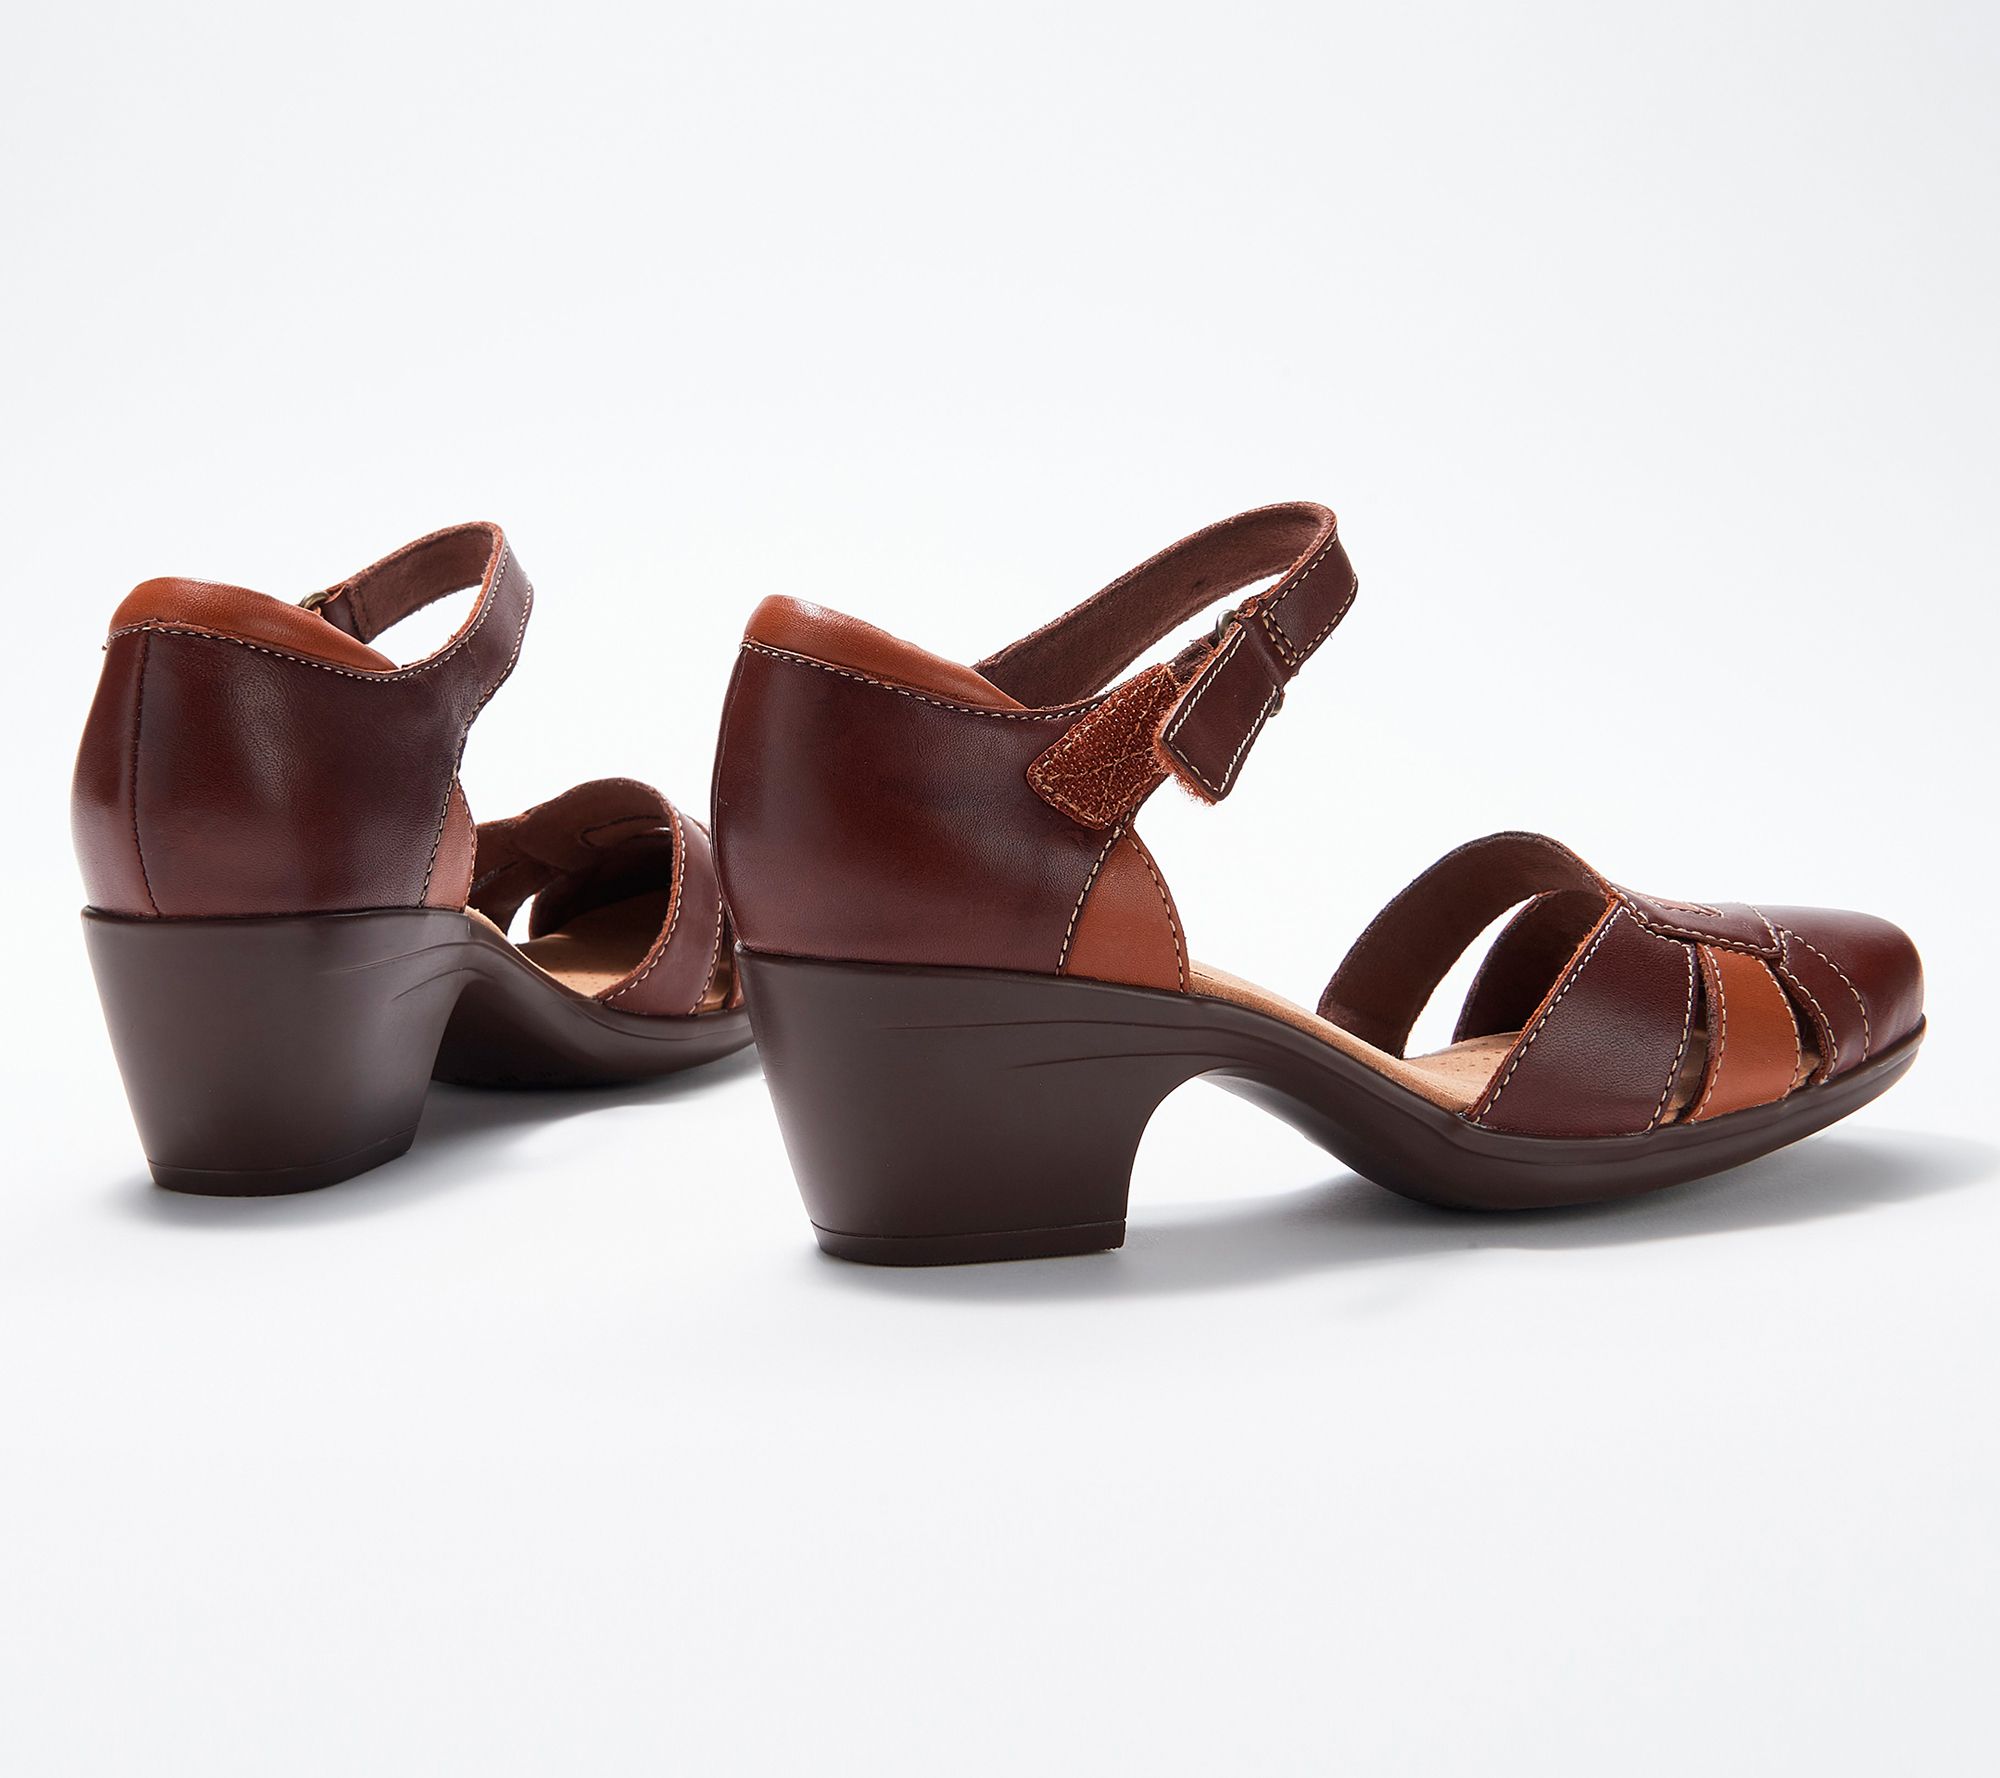 Mujer Zapatos de Tacones de Cuñas y zapatos de salón Emily Daisy Clarks de Caucho de color Marrón ahorra un 44 % 